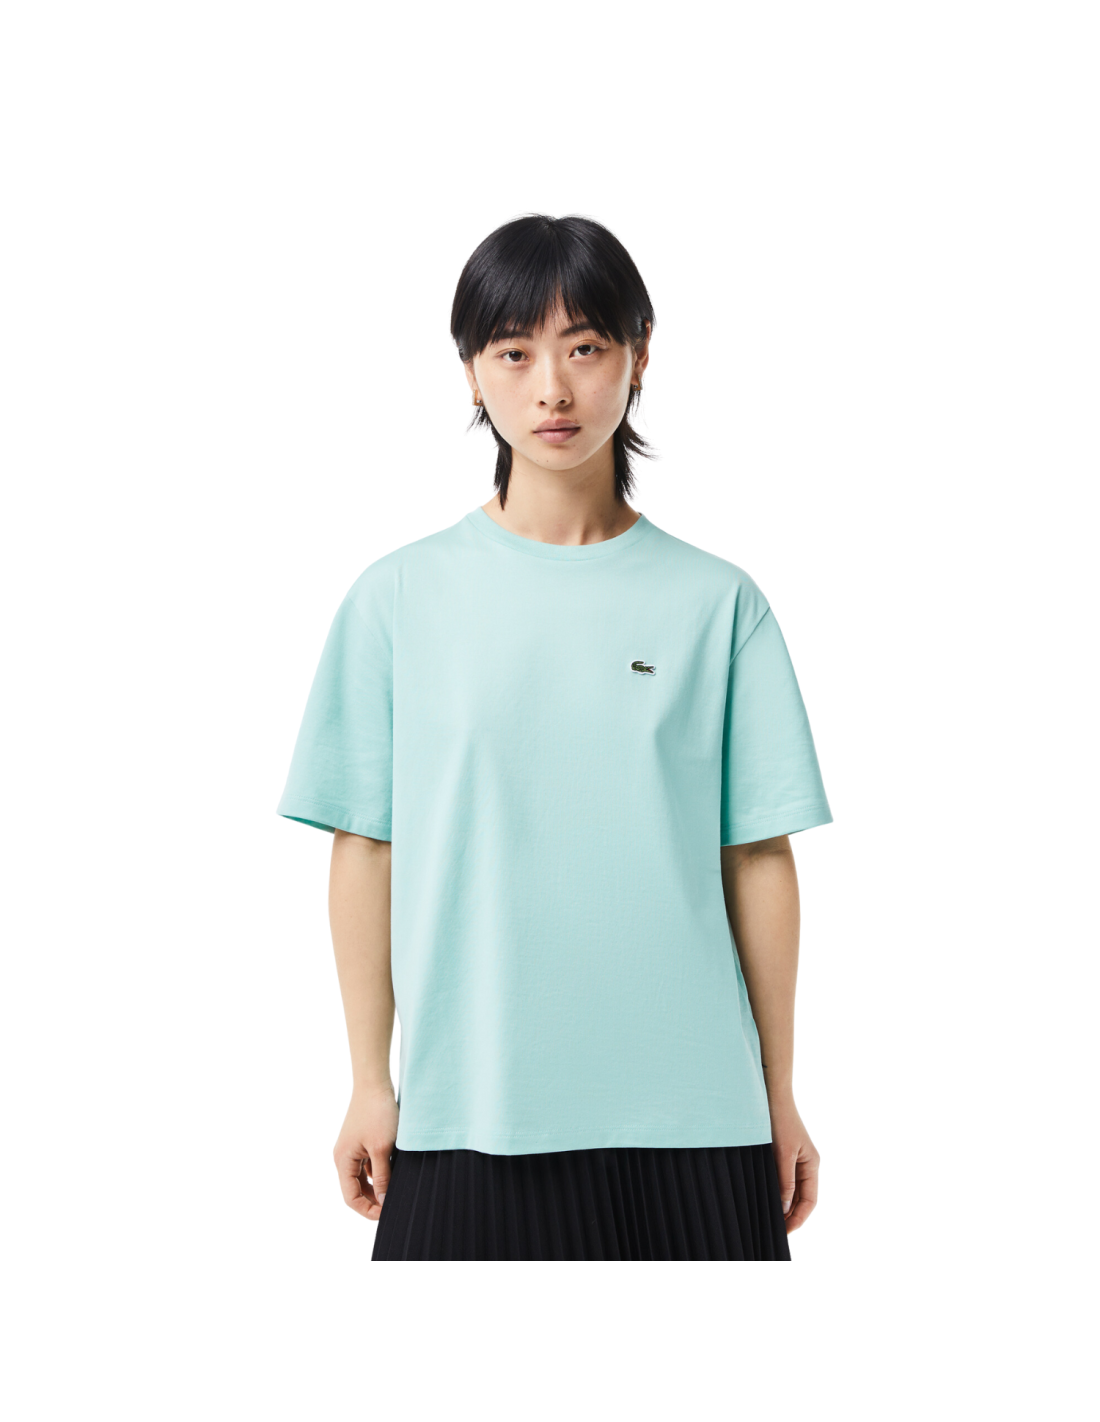 Byttehandel varsel amerikansk dollar Damen-T-Shirt Lacoste aus Premium-Baumwolle Mint